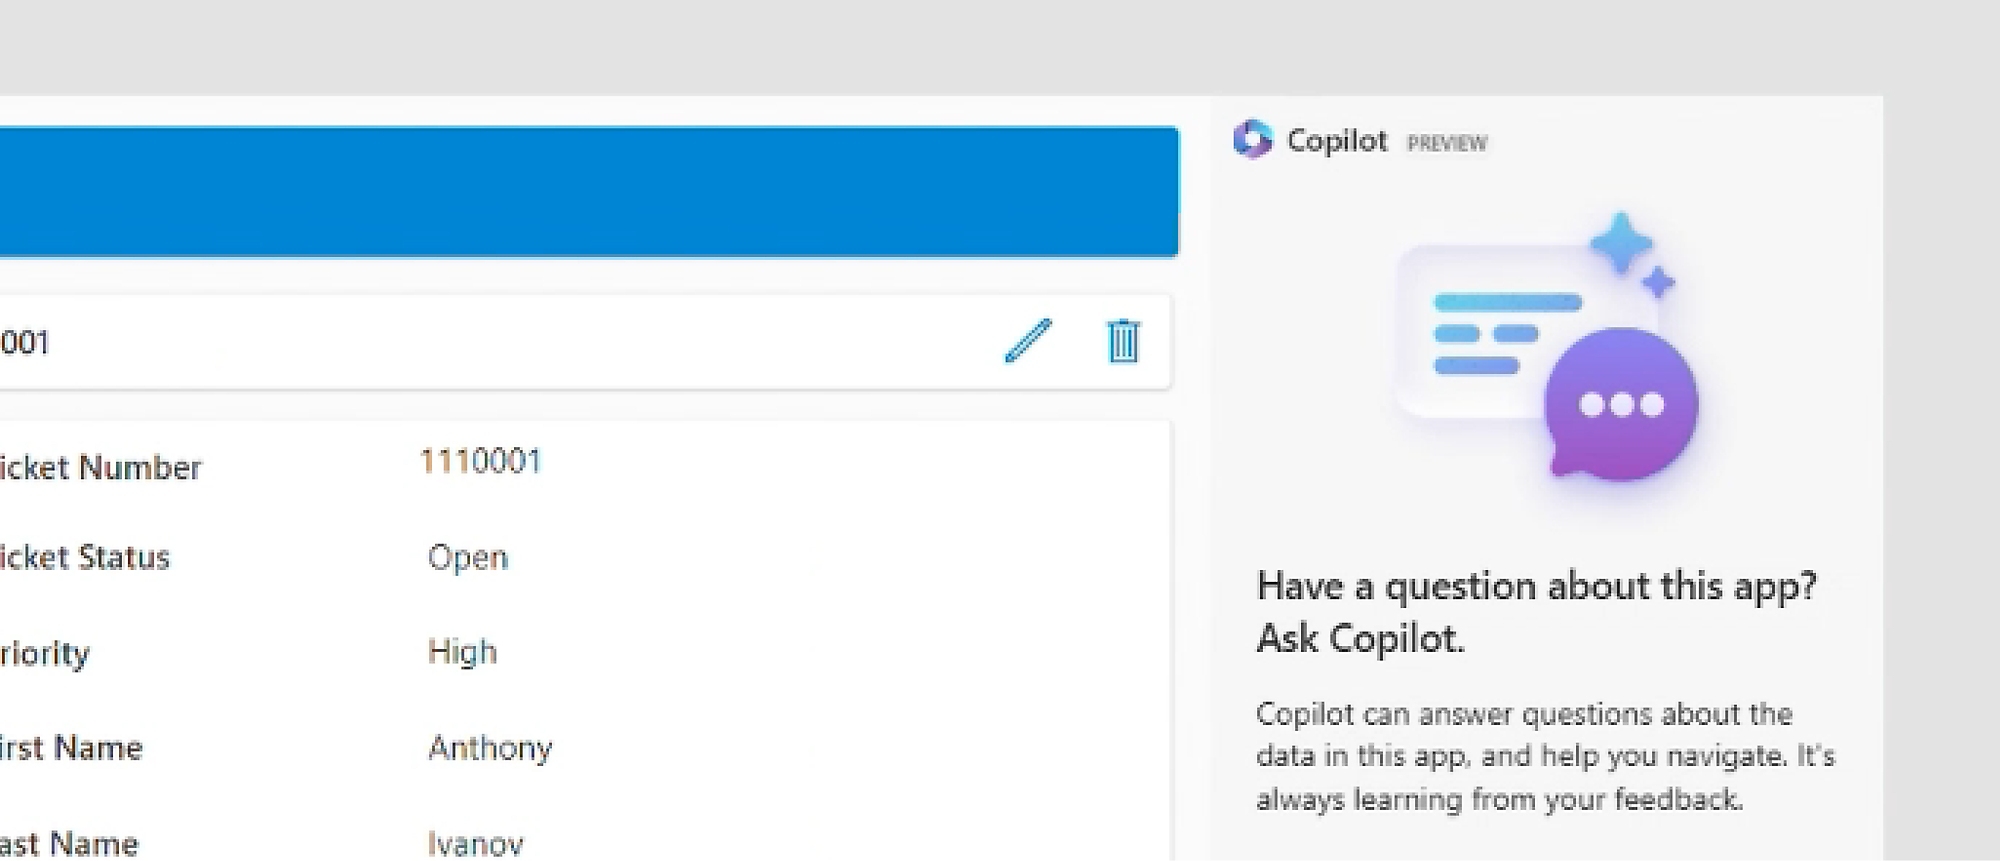 Power Apps'de Copilot'ın ekran görüntüsü ve kullanıcıdan uygulama hakkında Copilot soruları sorması isteniyor